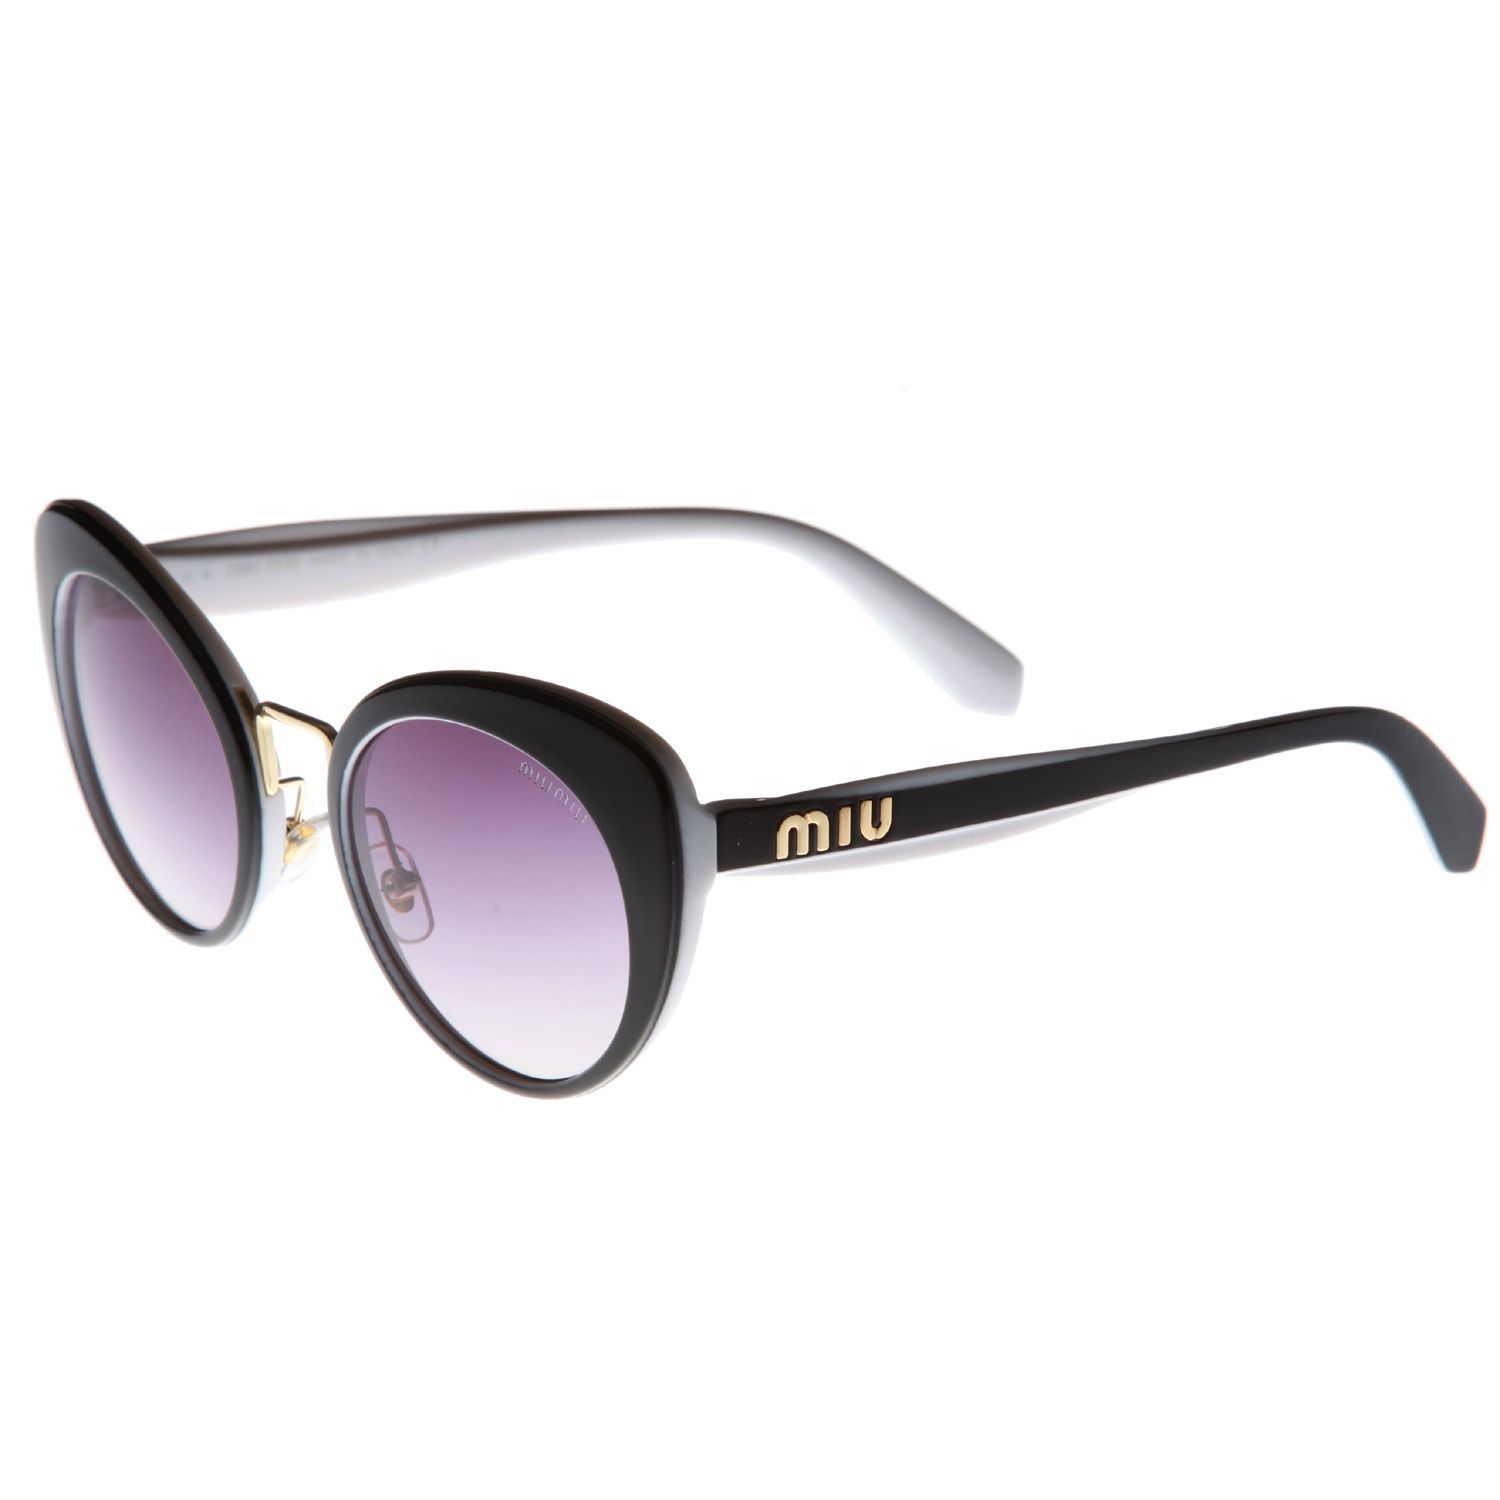 عینک آفتابی زنانه میو میو مدل MIU 300 -  - 2